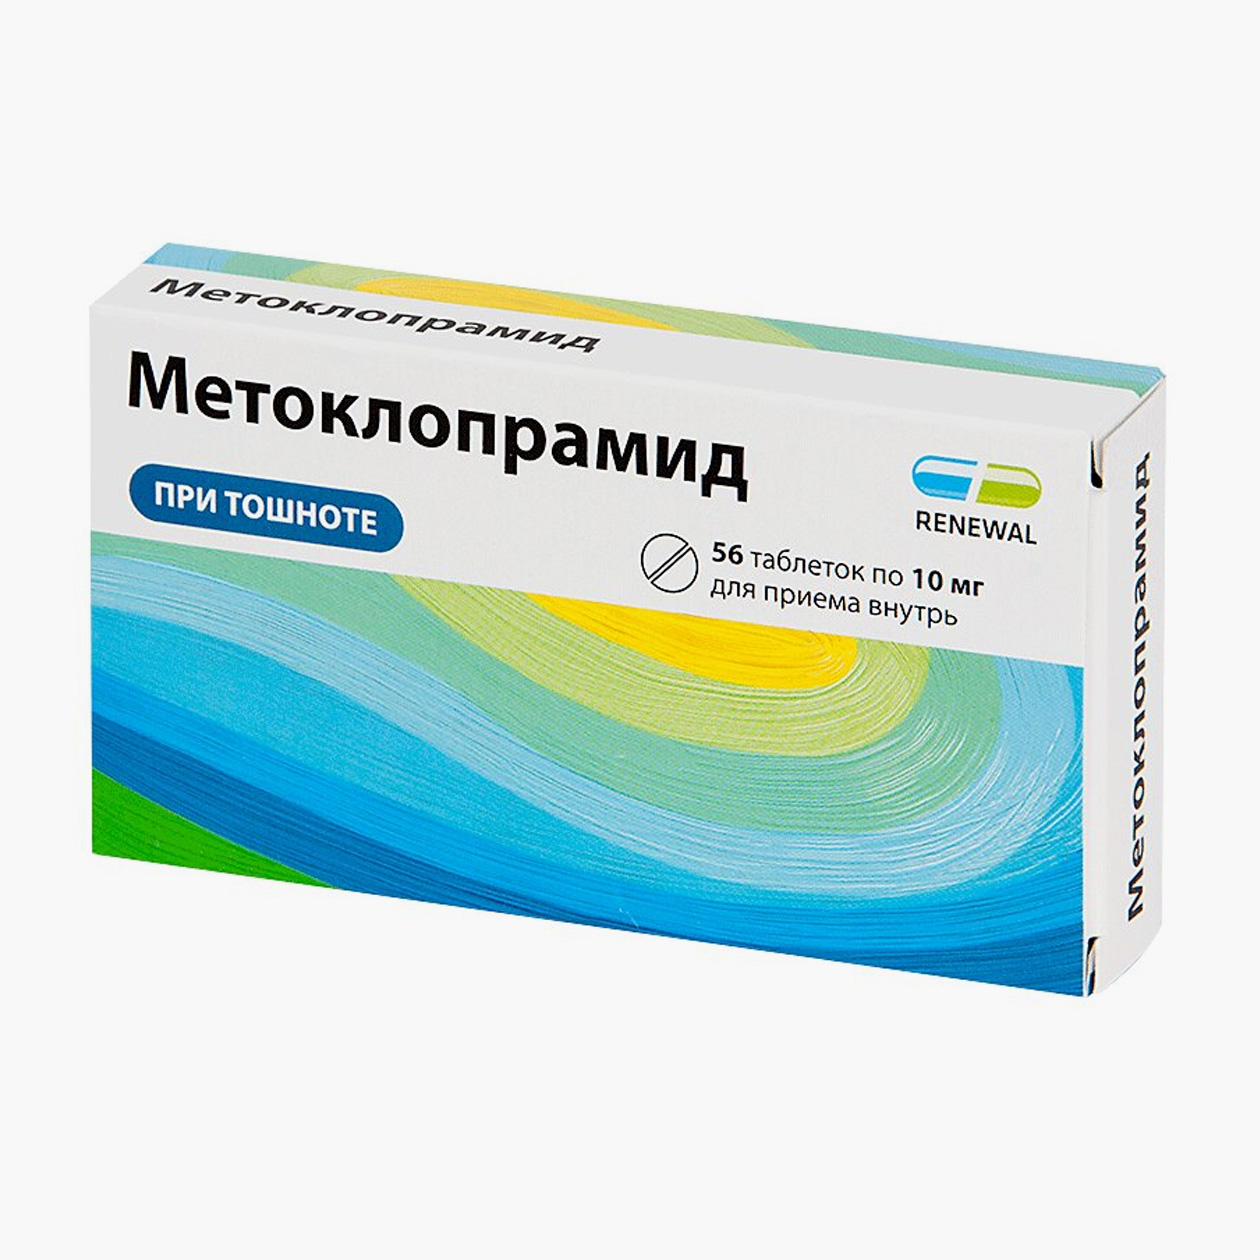 Цена за 56 таблеток 10 мг метоклопрамида начинается от 37 ₽